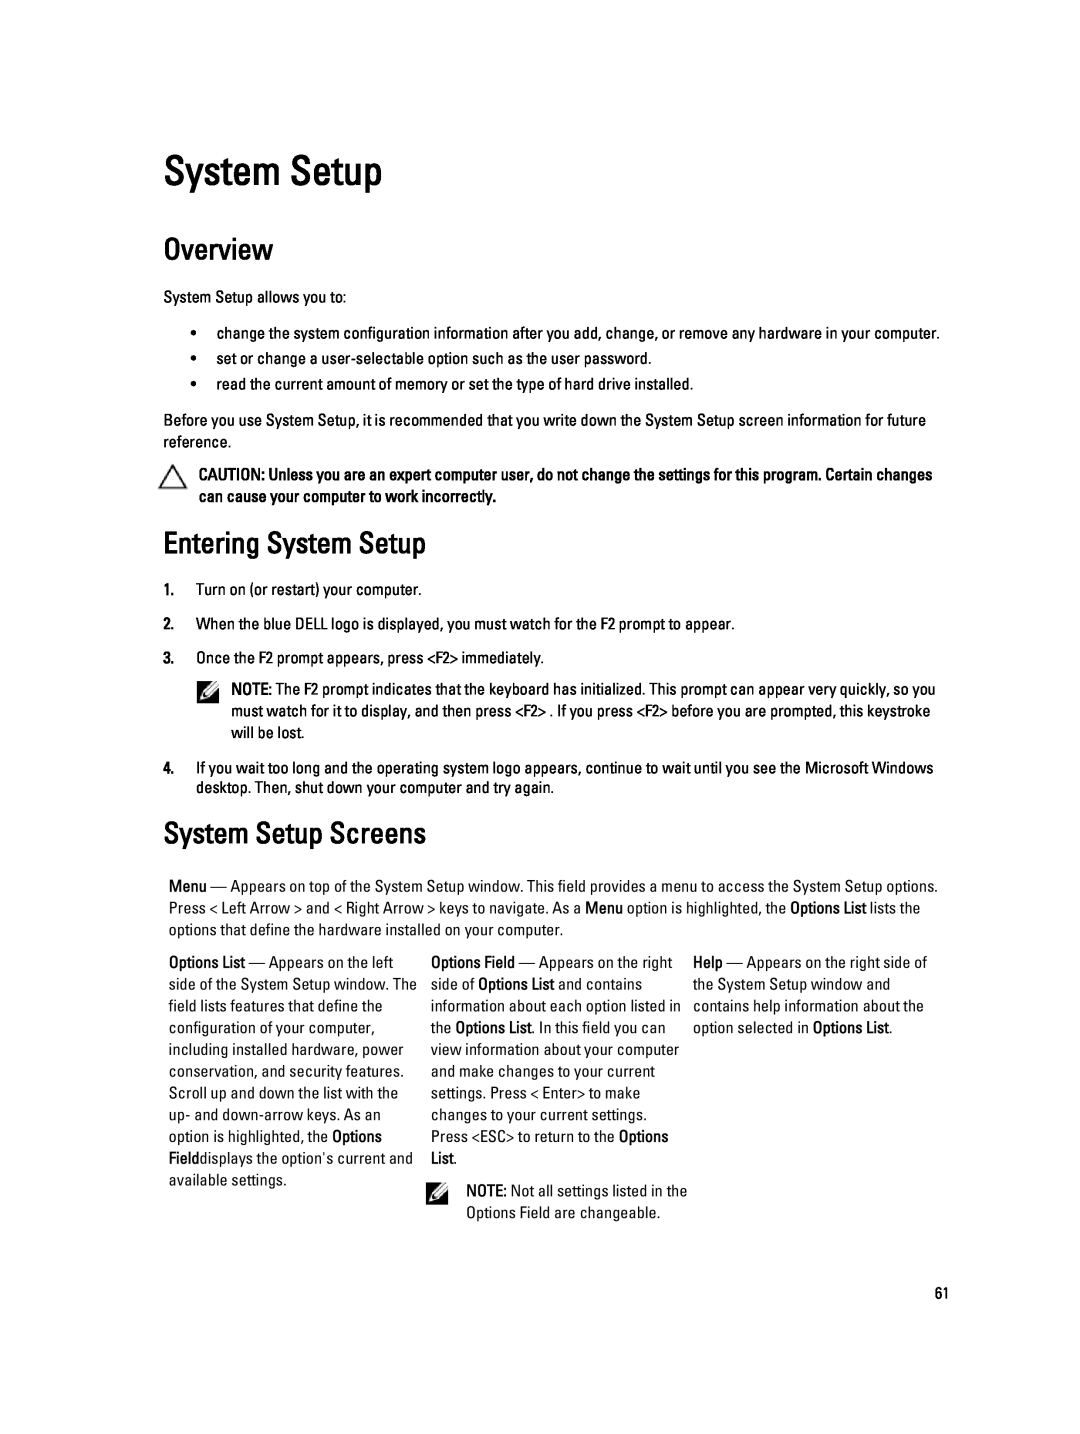 Dell V130 service manual Overview, Entering System Setup, System Setup Screens 